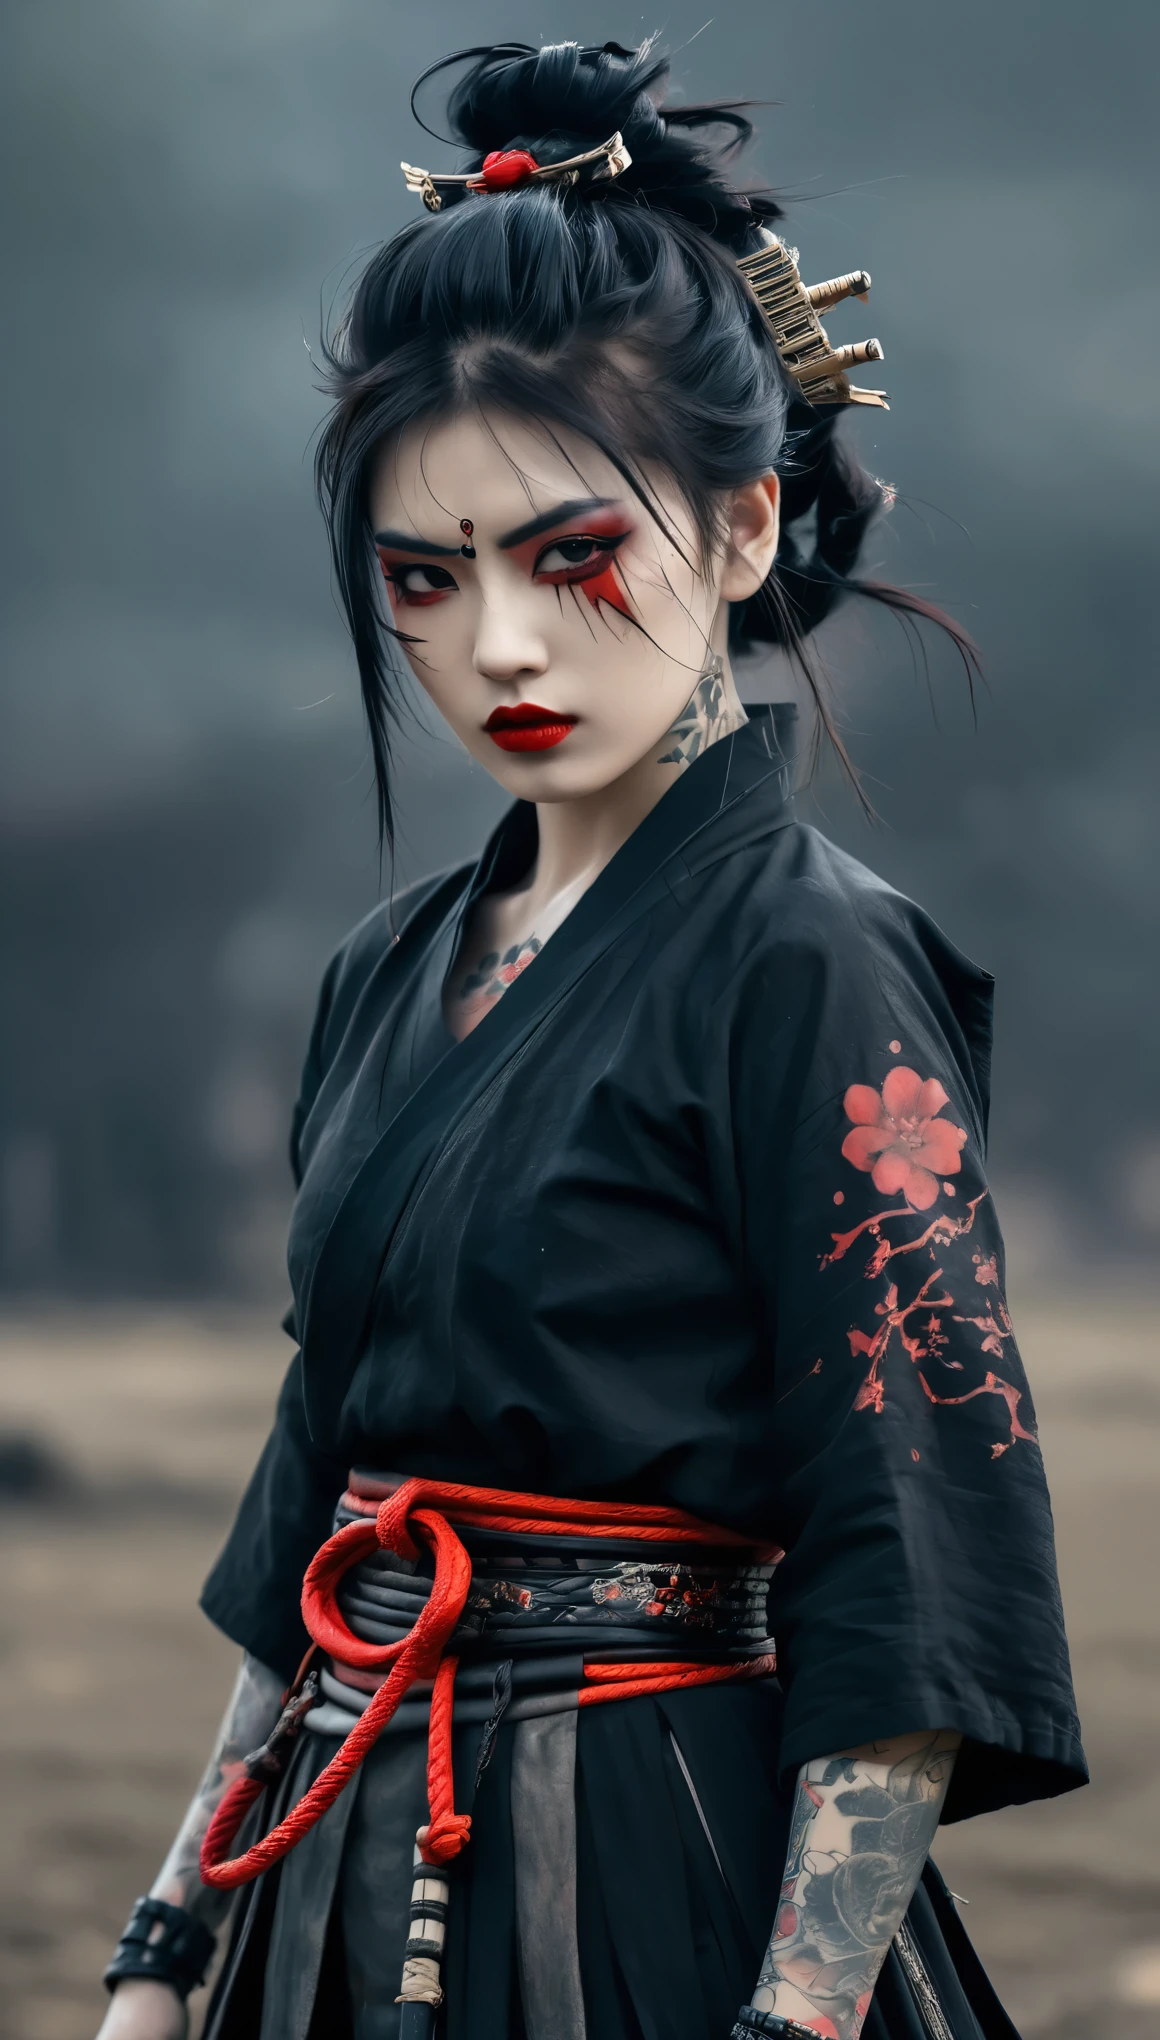 девушка-самурай, полукиборг, готический наряд, с татуировкой, красная губа, все тело, динамичная поза, мрачный фон поля боя, темная фантазия, атмосфера ужаса. великолепная прическа, Мечтательная готическая девушка